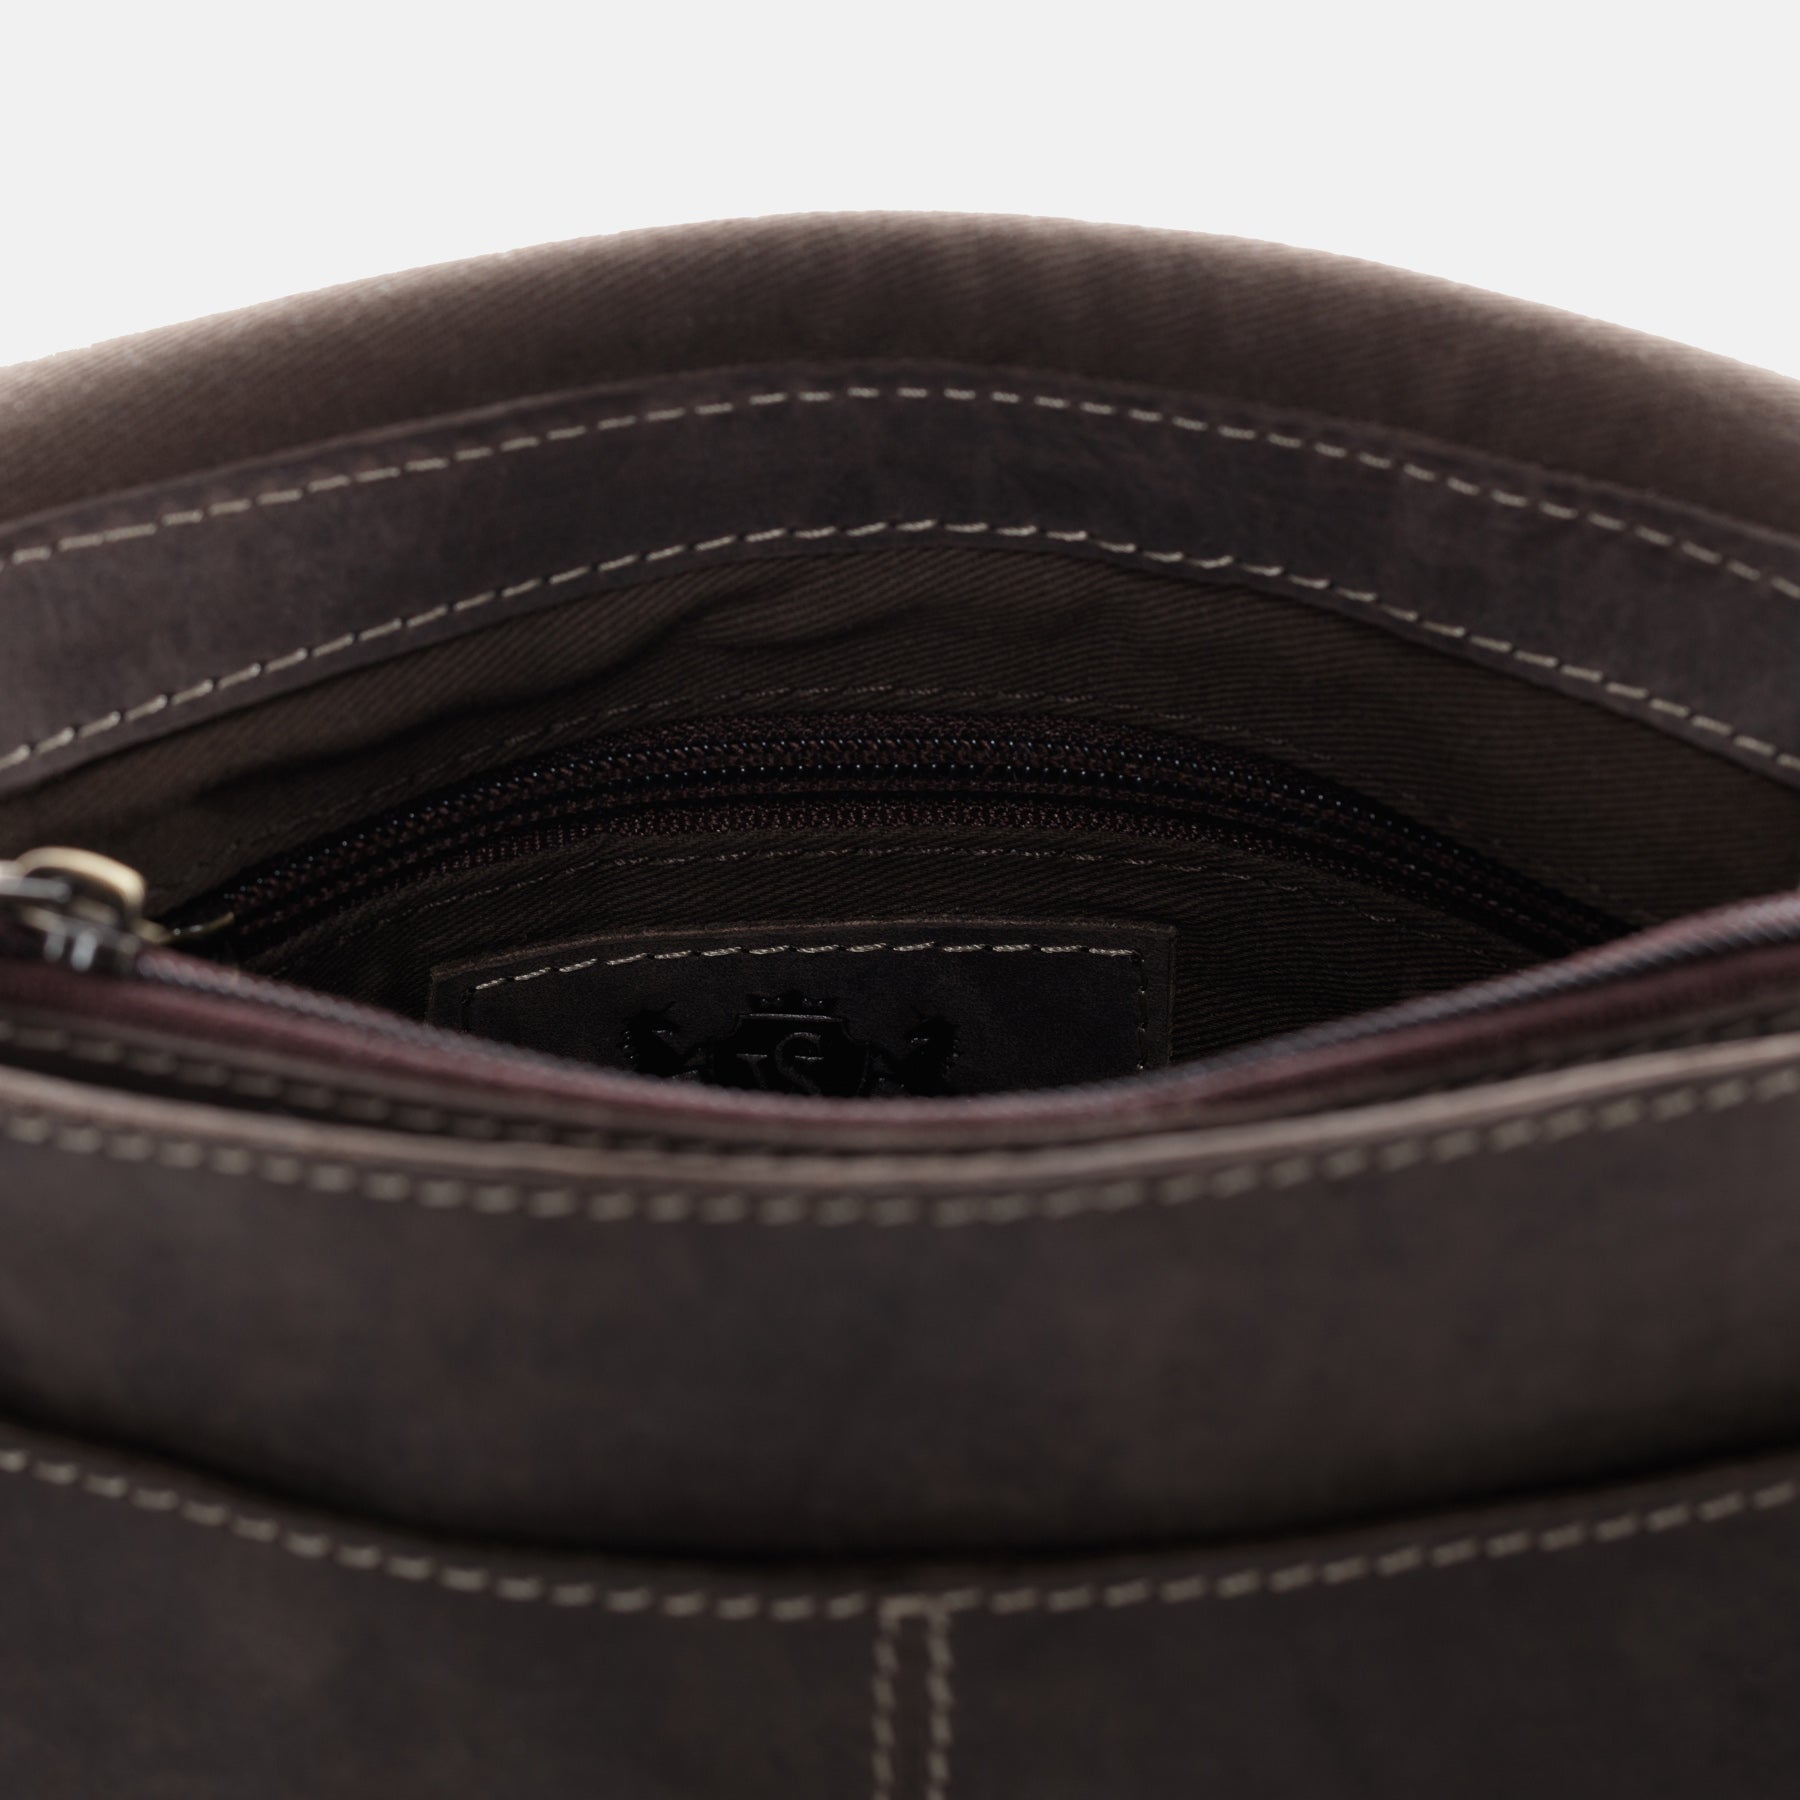 SID & VAIN shoulder bag SANDY buffalo leather brown handbag shoulder bag